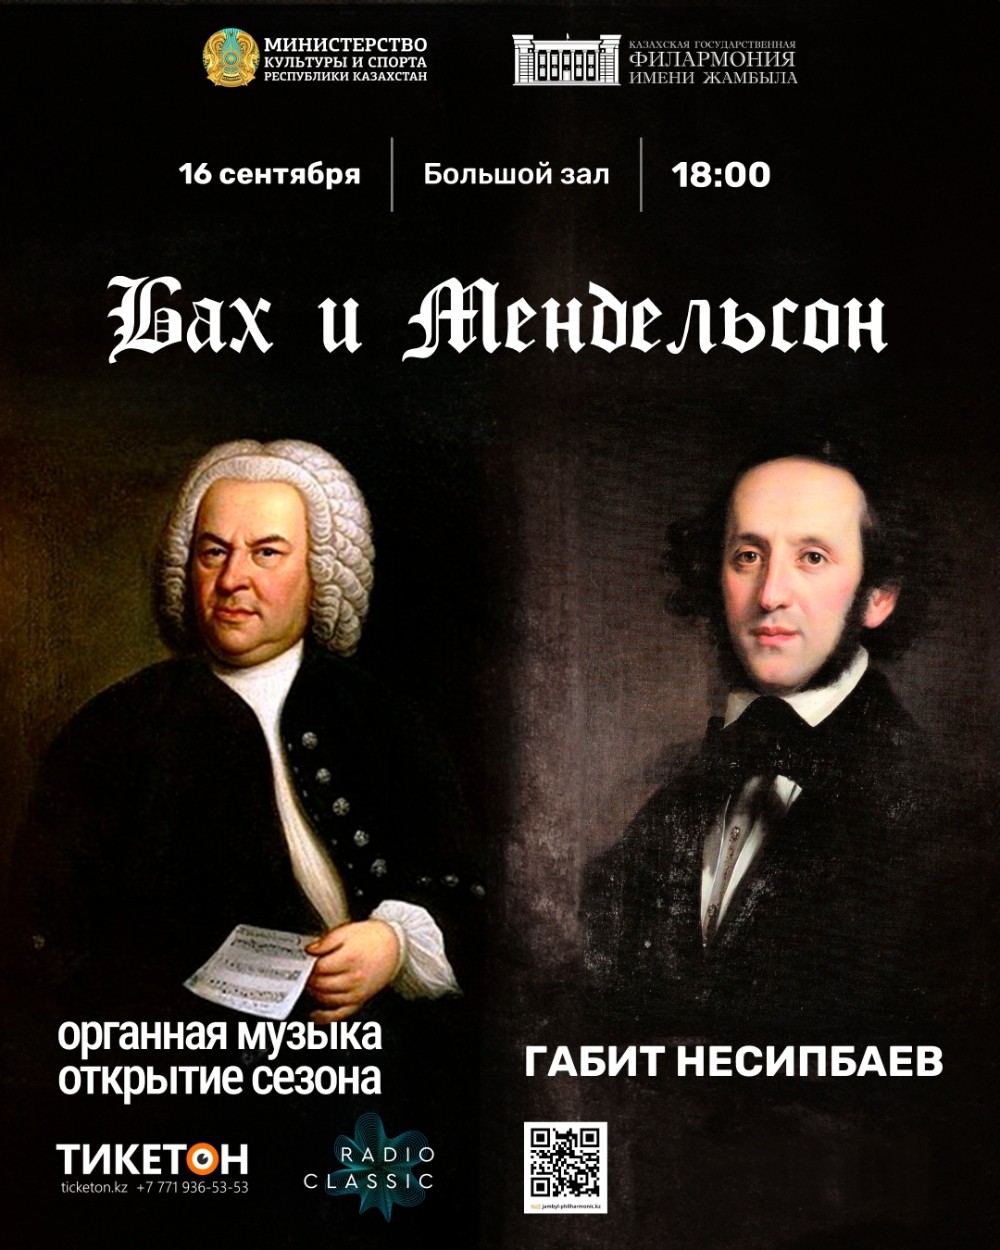 органная музыка Габита Несипбаева открытие сезона